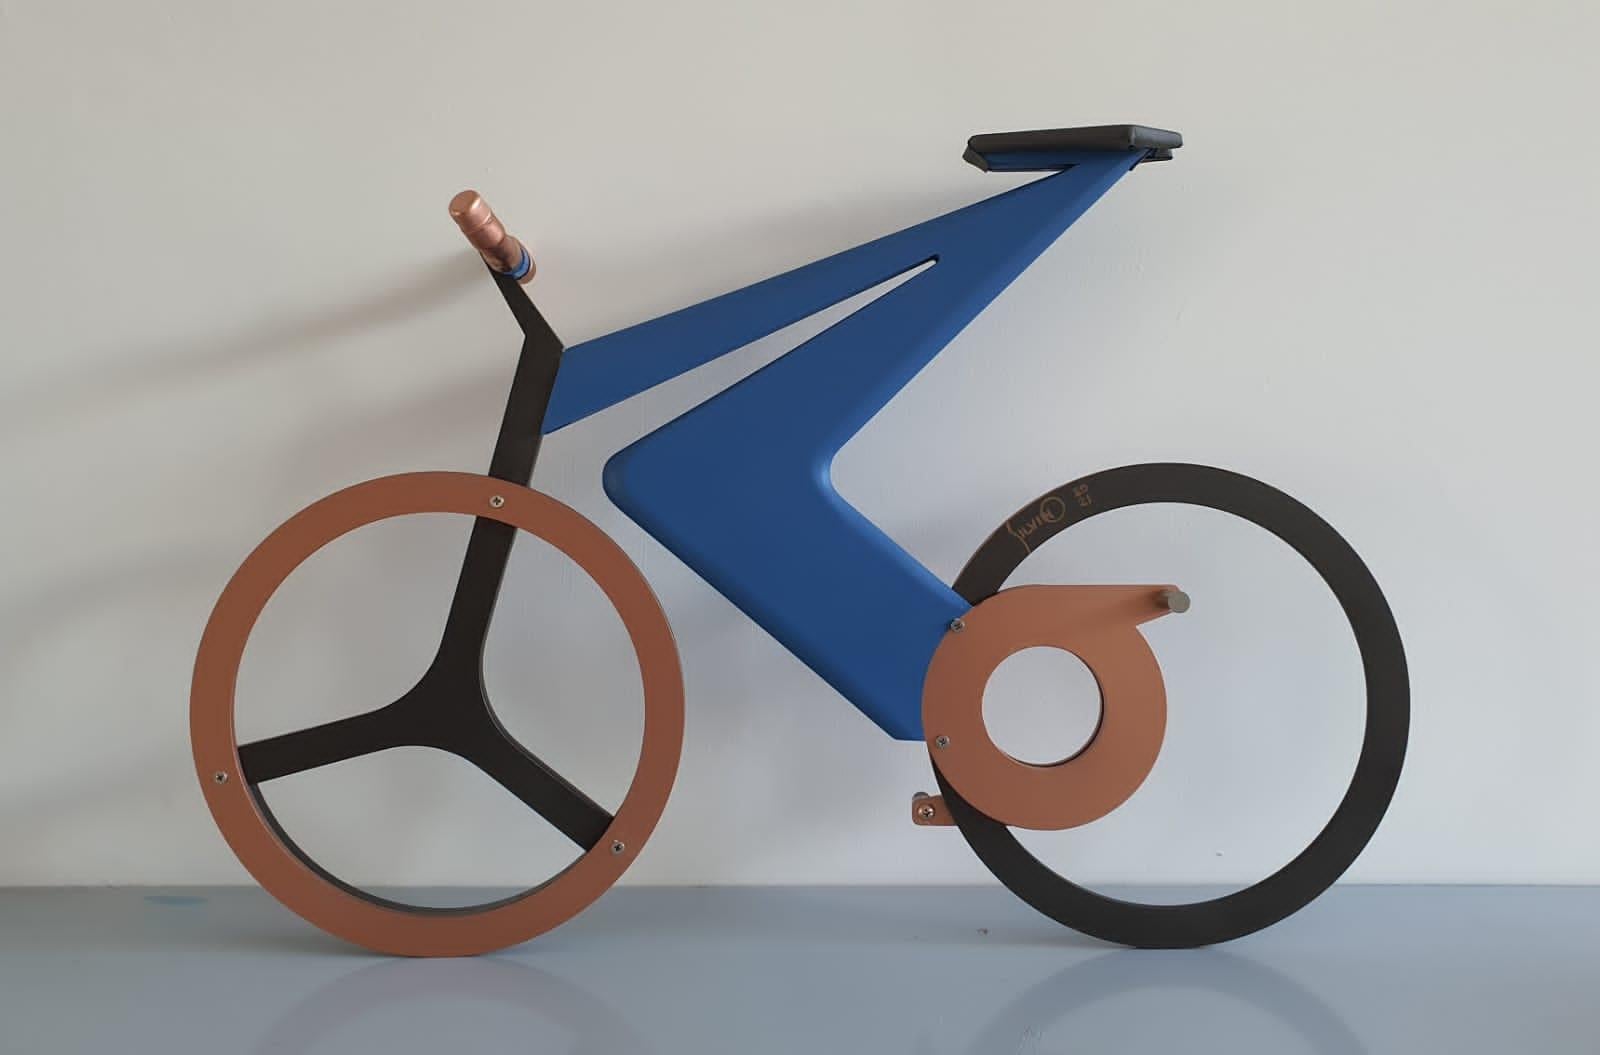 Silvino a conçu une série de bicyclettes qu'il a transformées en sculptures murales. Chacune des motos est différente, que ce soit par le modèle ou la couleur.

Silvino Lopeztovar
Né à Tlahuelilpan, Hidalgo, Mexique en 1970, Silvino Lopeztovar a